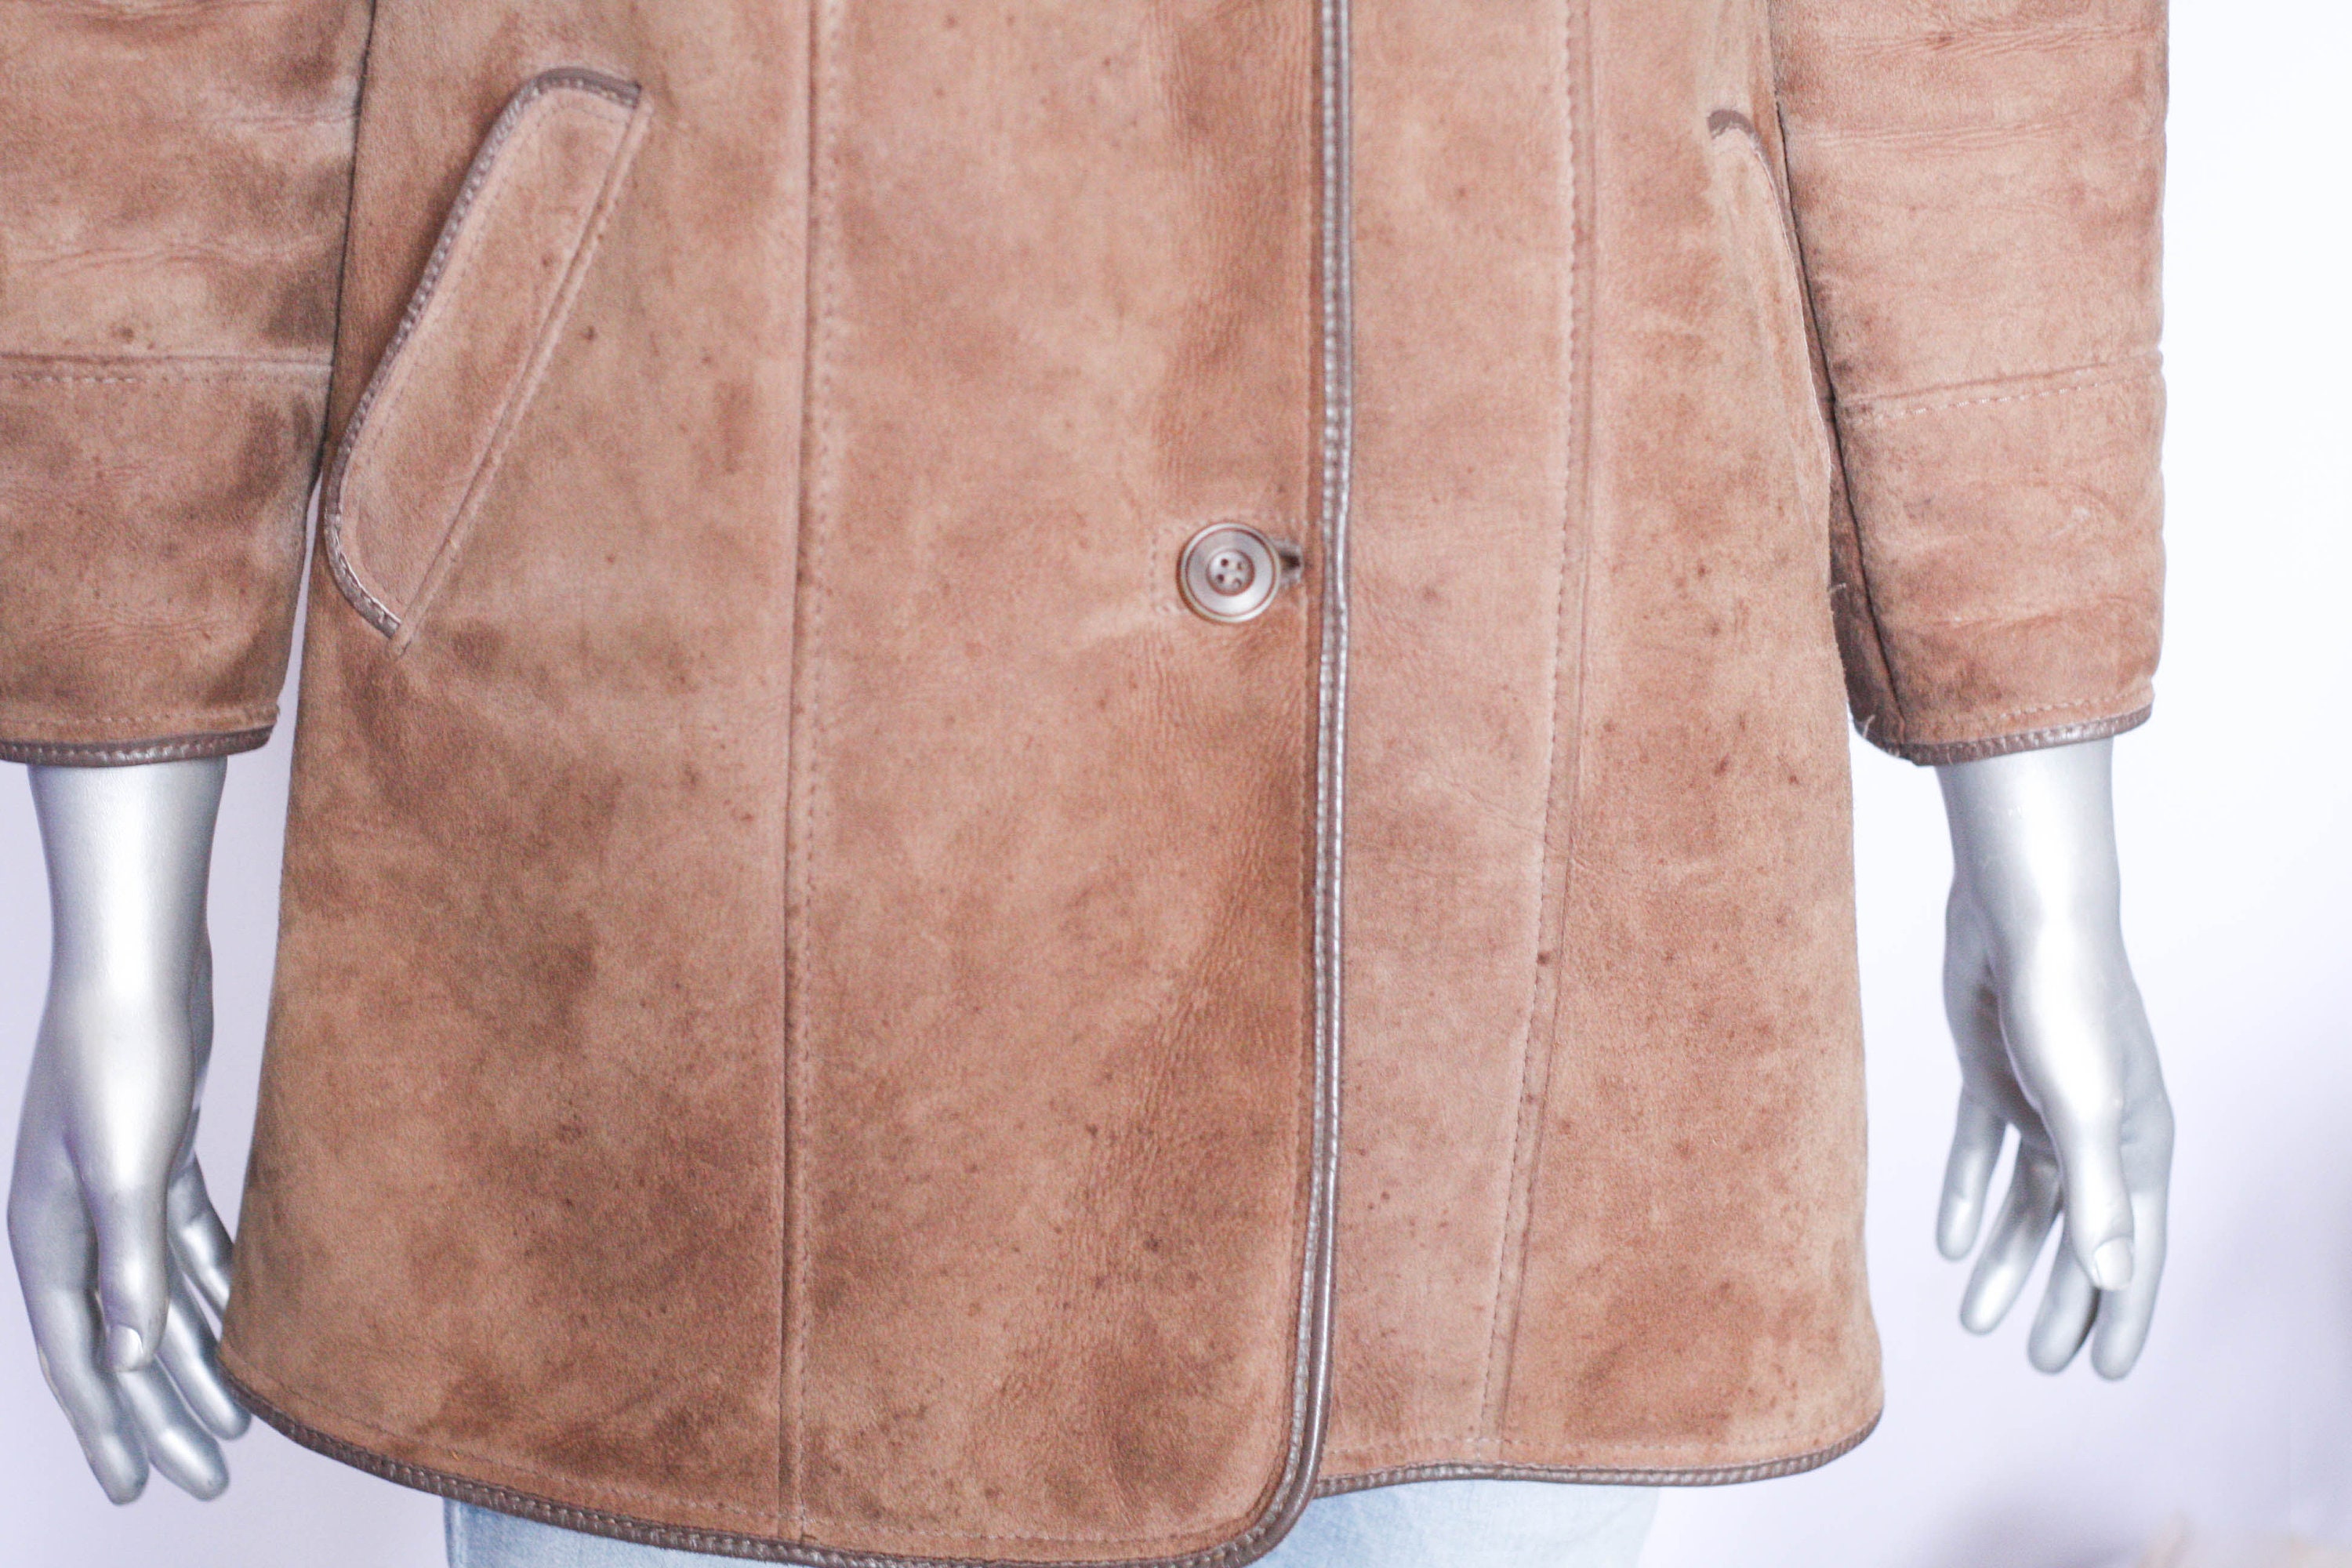 MechanicalOrange Unisex Lamb Leather Winter Coat